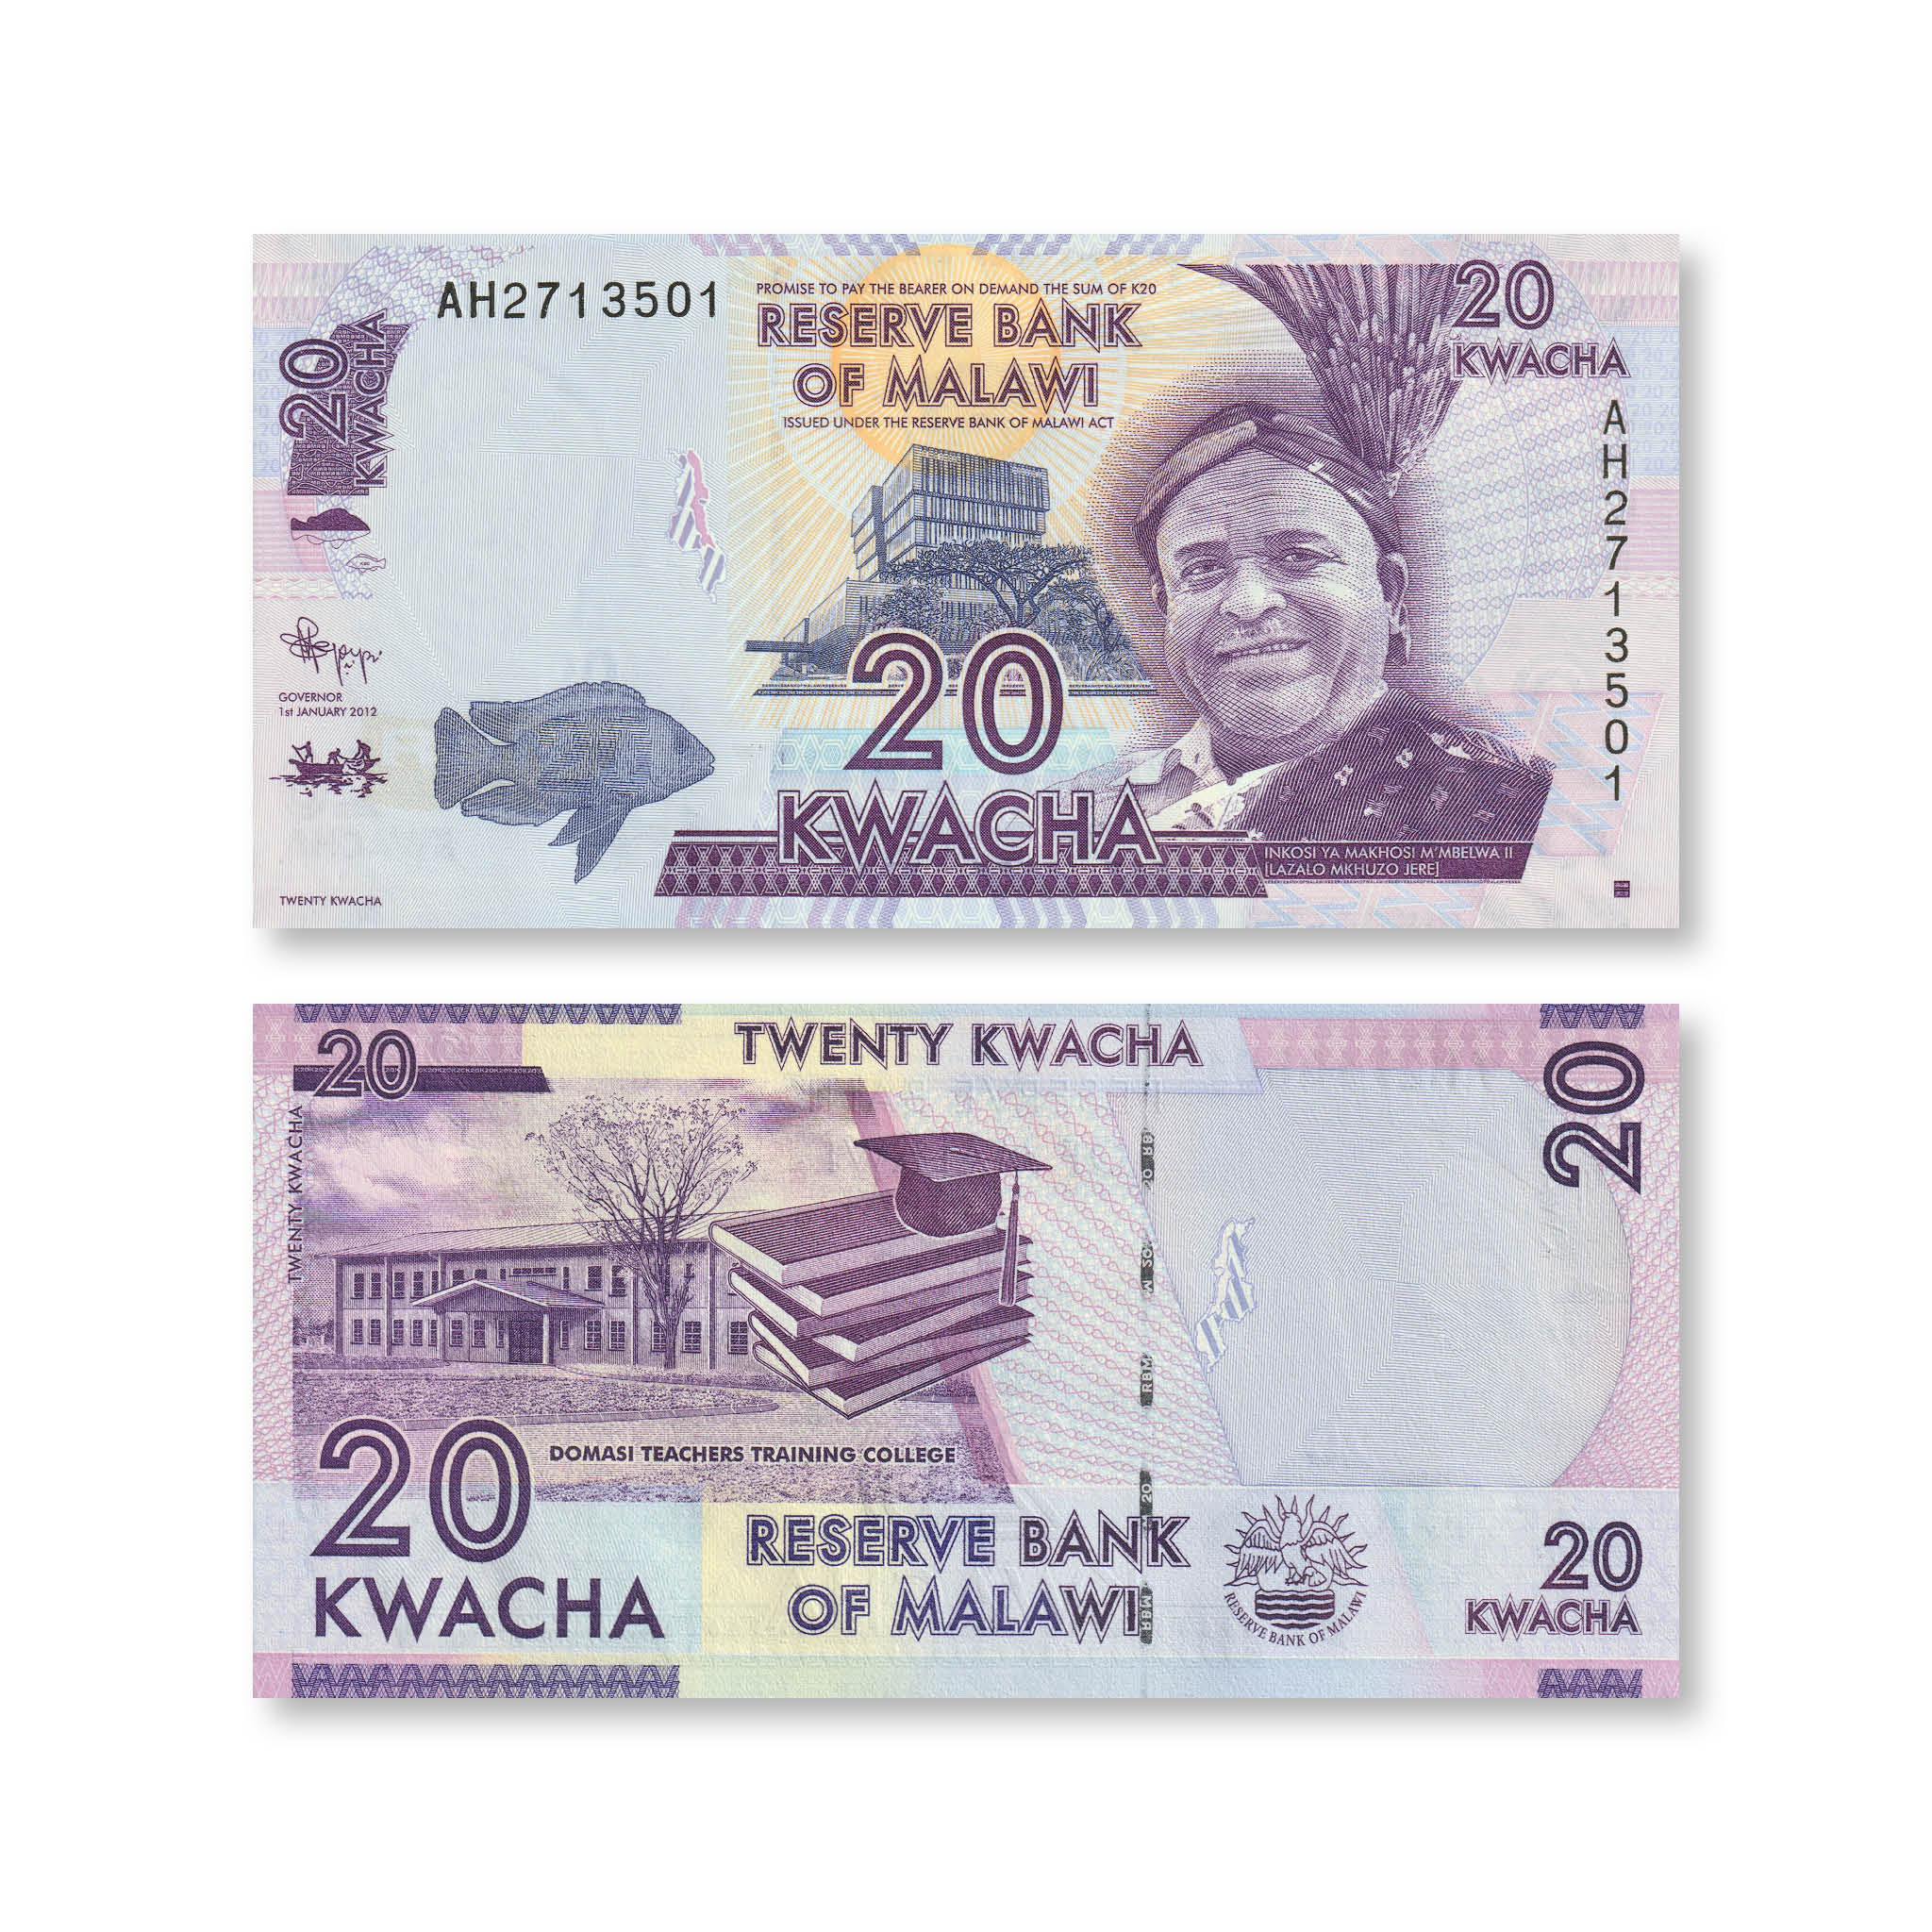 Malawi 20 Kwacha, 2012, B150a, P57a, UNC - Robert's World Money - World Banknotes